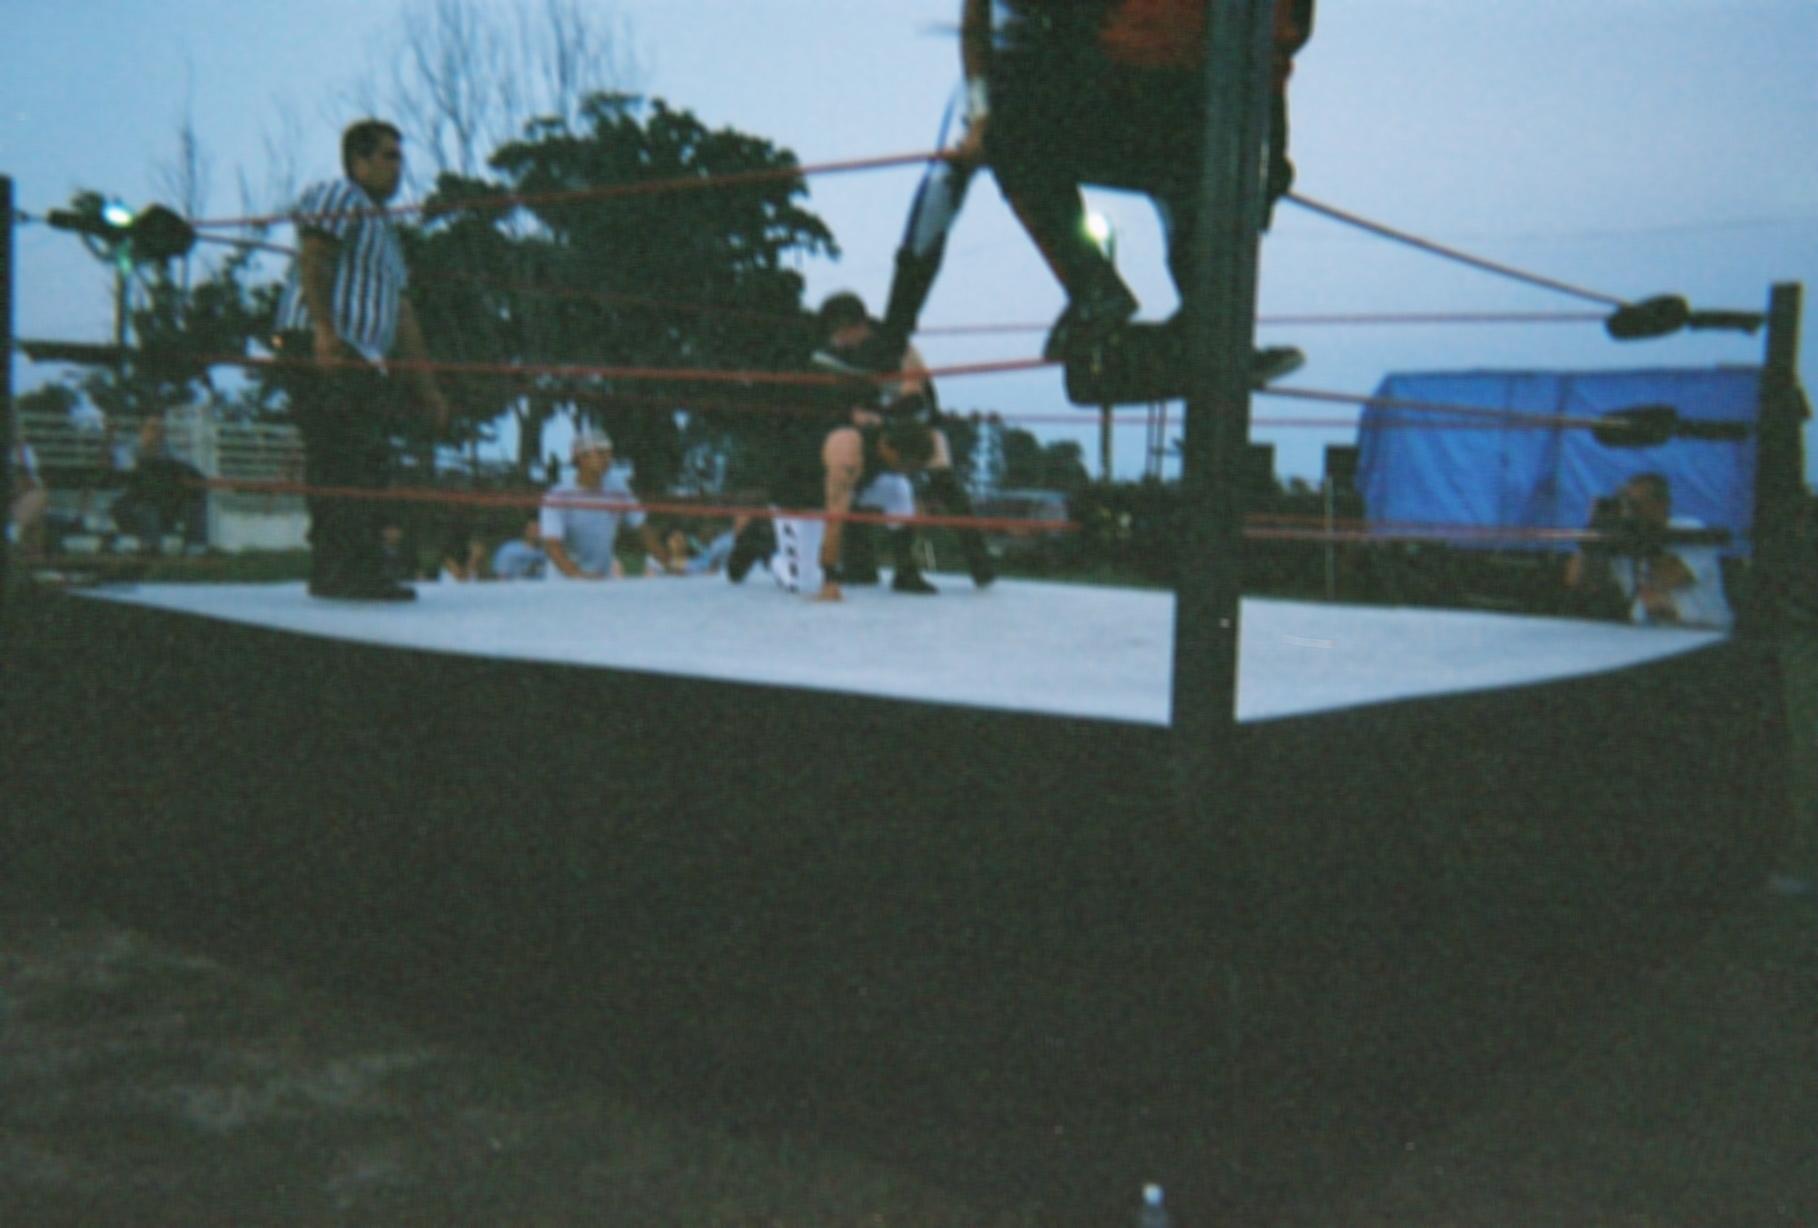 wrestling6.jpg